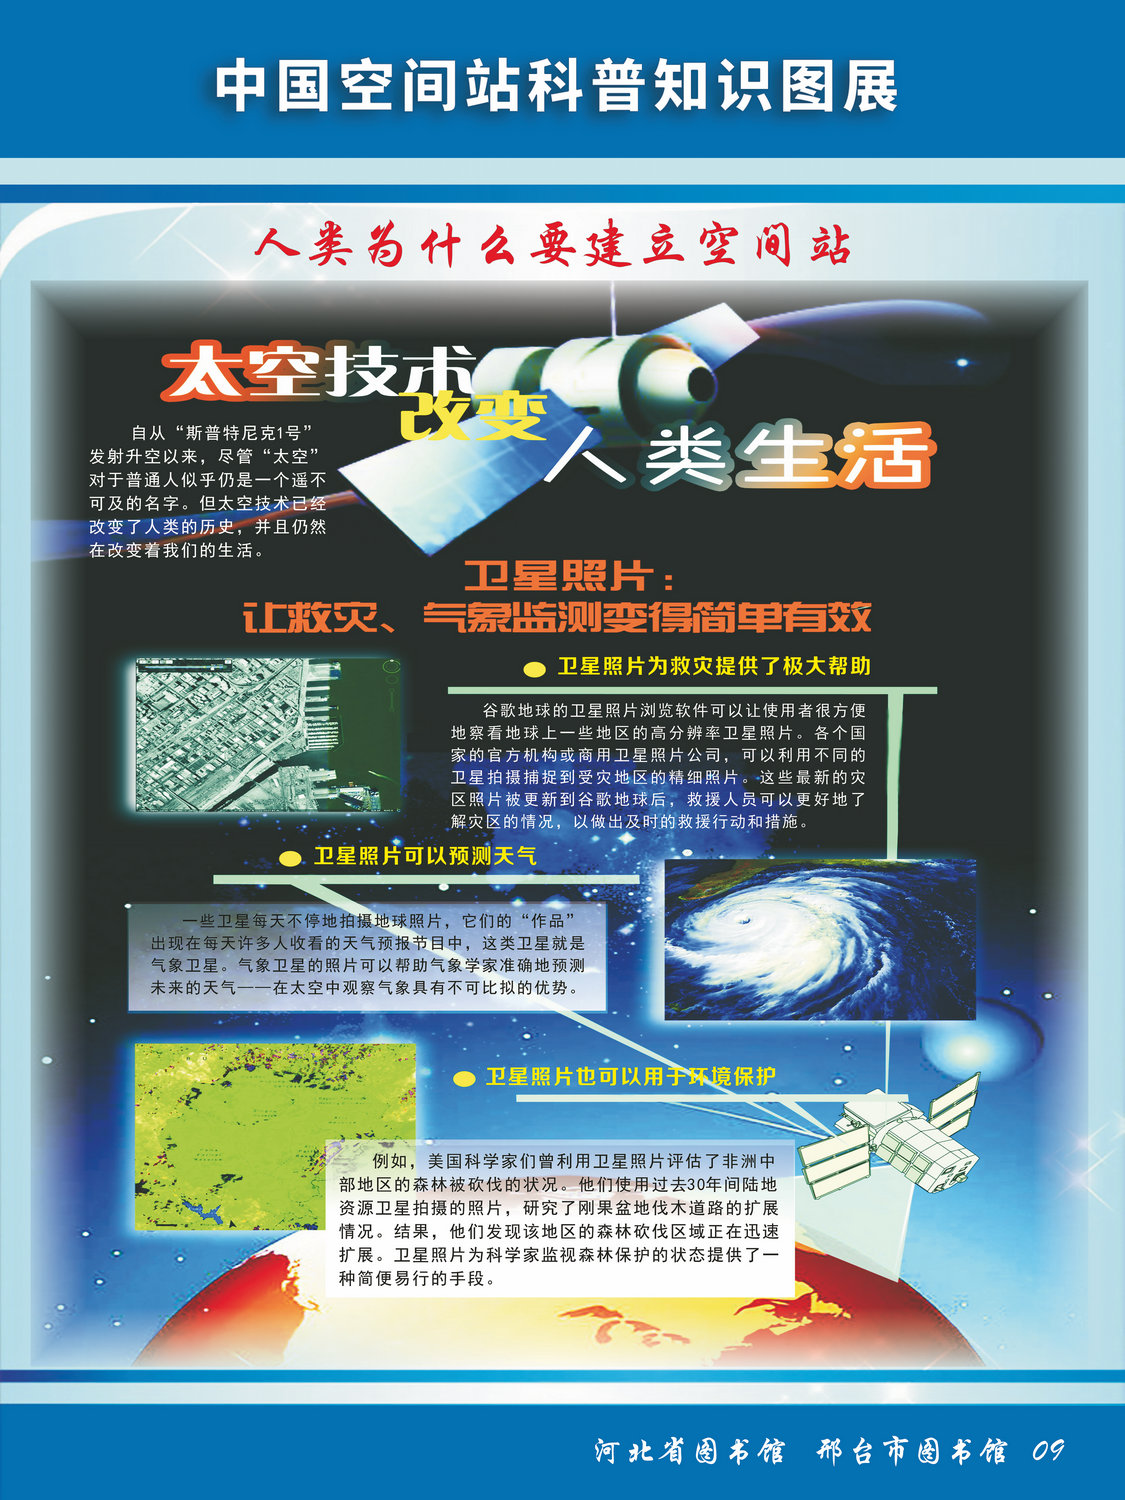 中国空间站科普知识图文展_图9